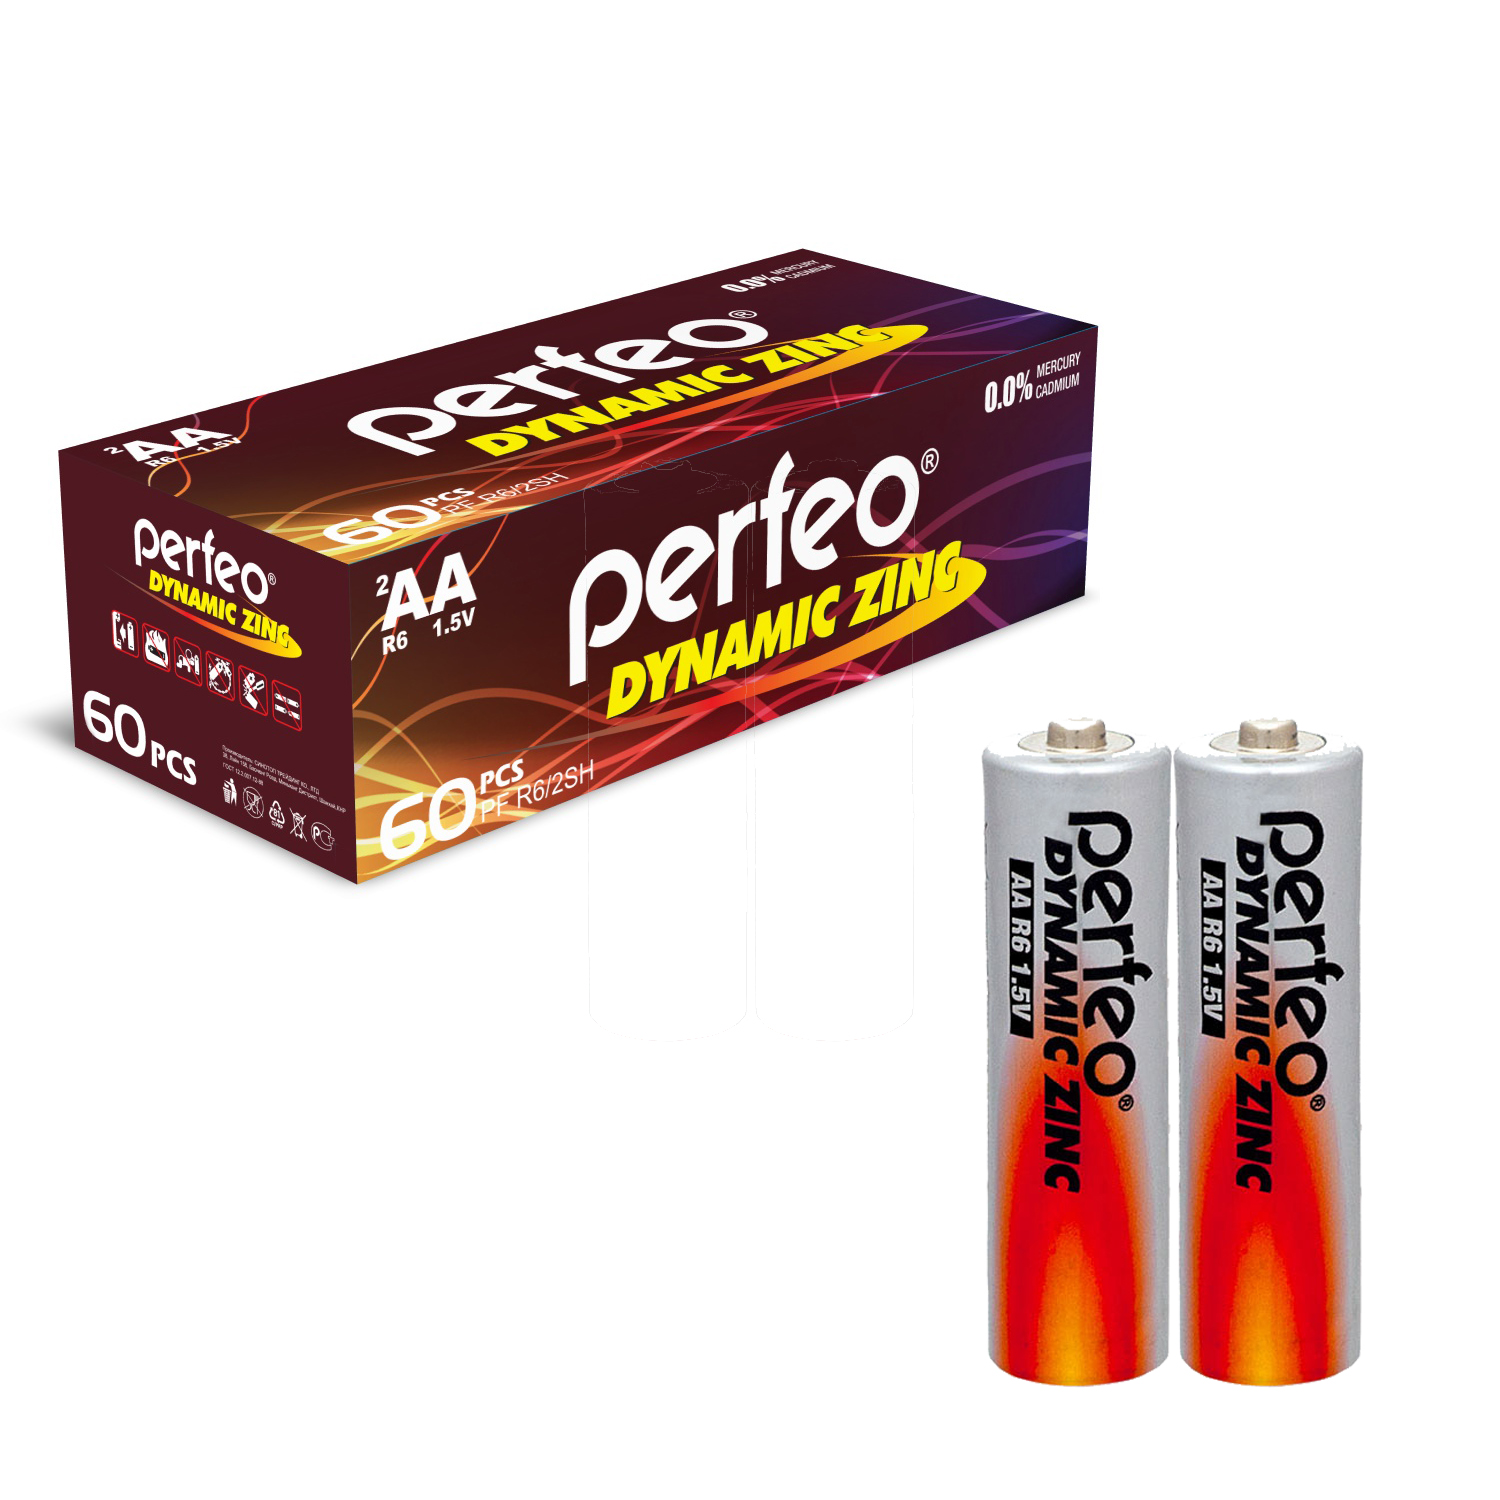 Батарейки Perfeo Dynamic Zinc AA (LR6), 60 шт, 30x2 шт